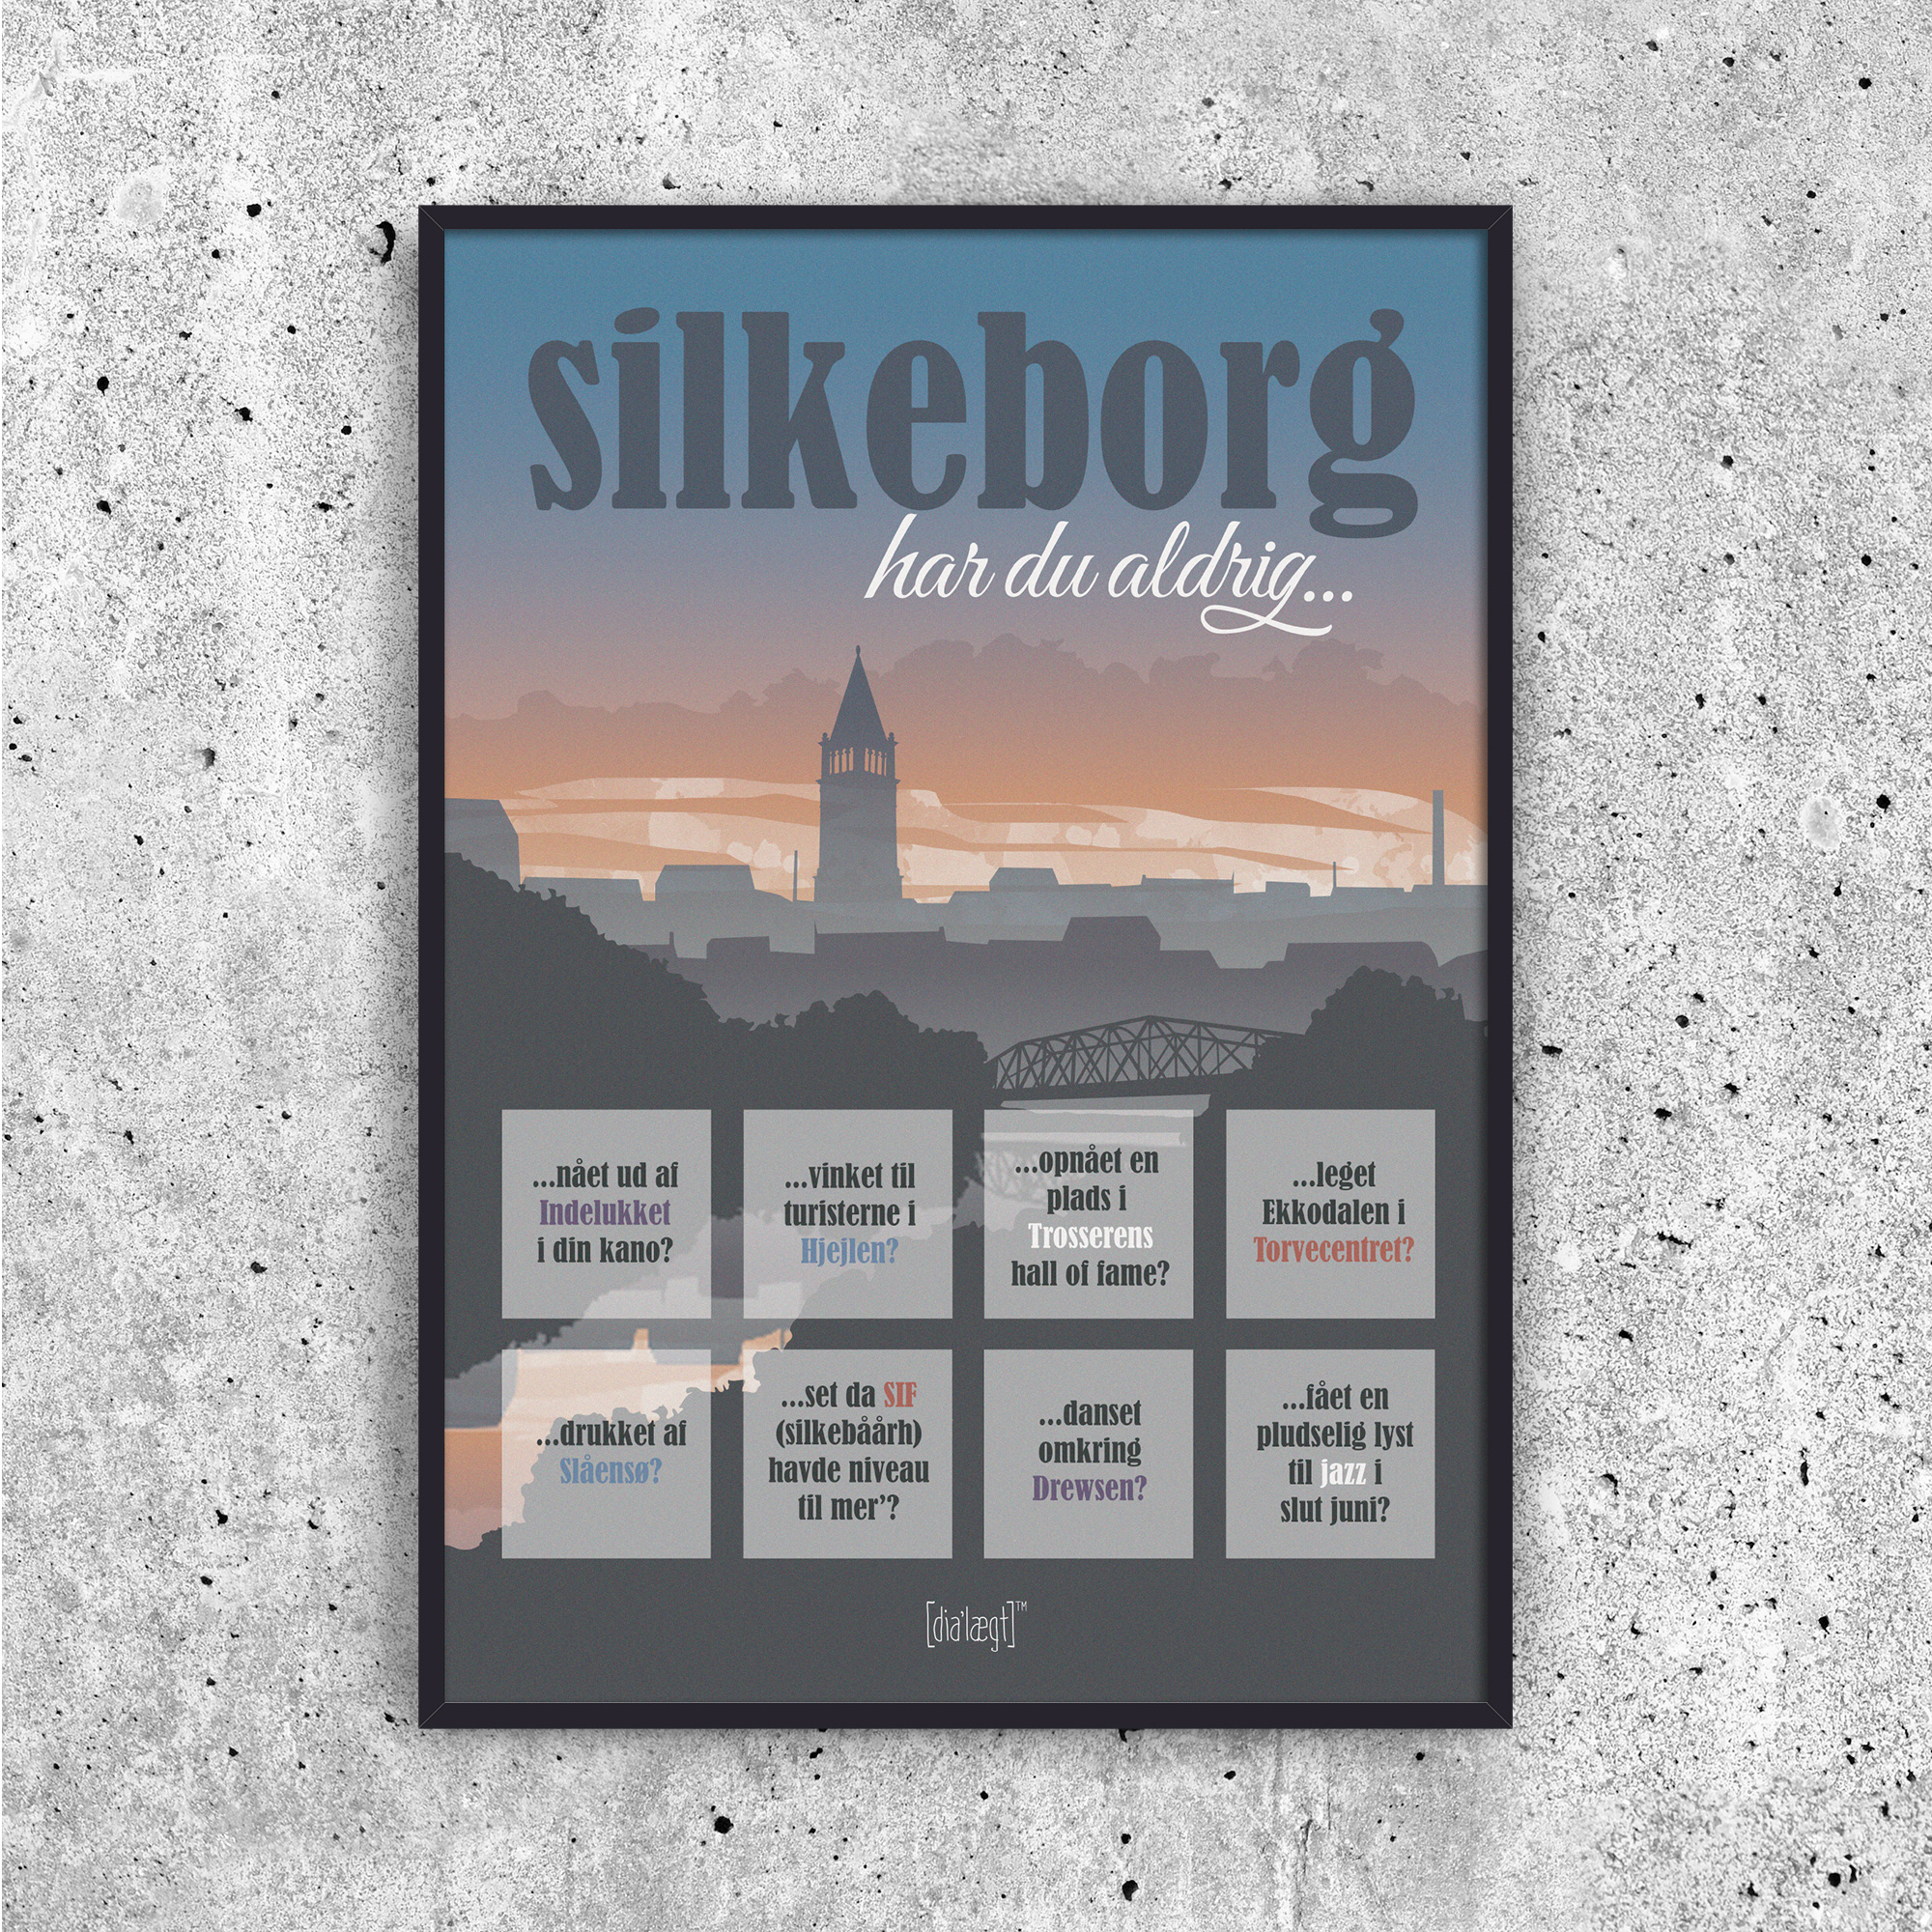 Silkeborg - Har du aldrig?